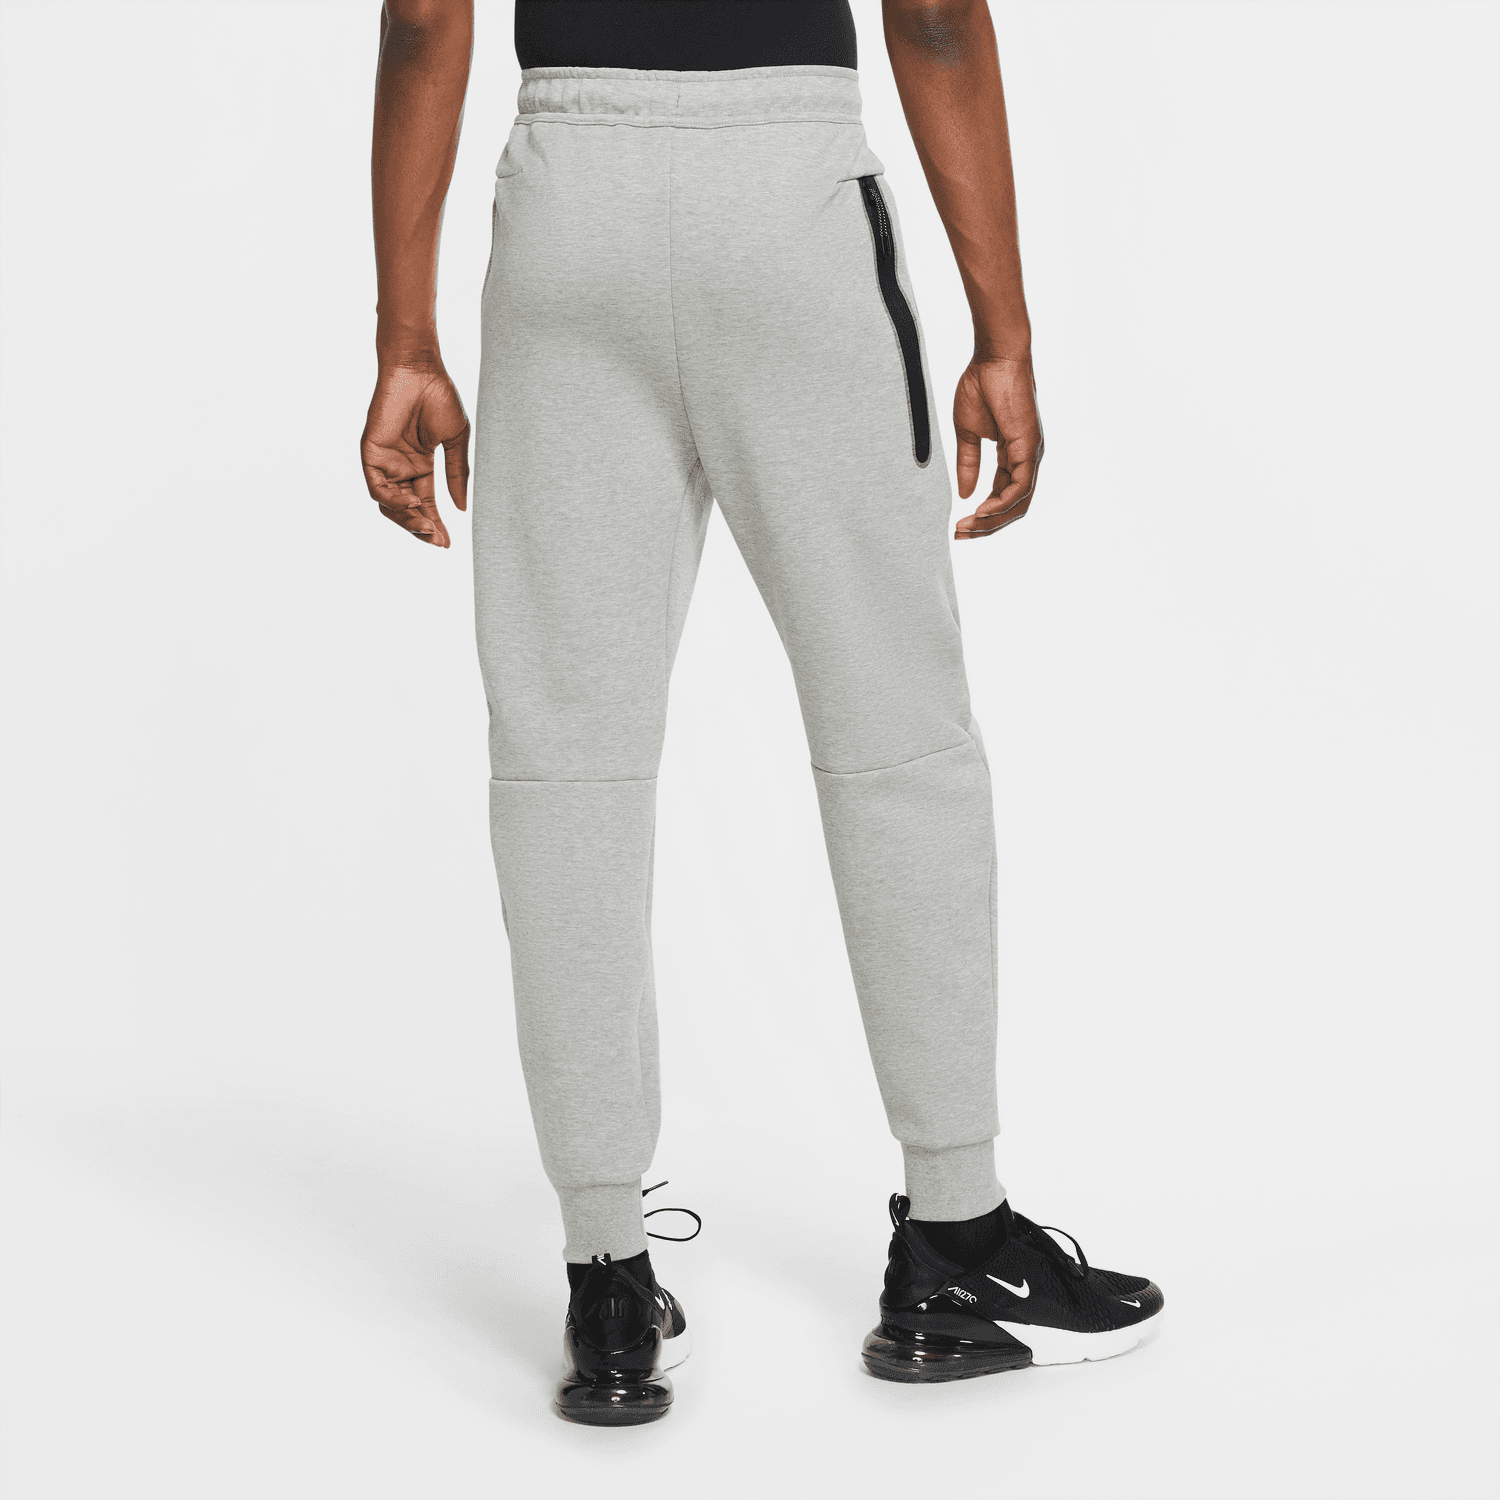 Nike Men's Sportswear Tech Fleece Black/Grey Joggers